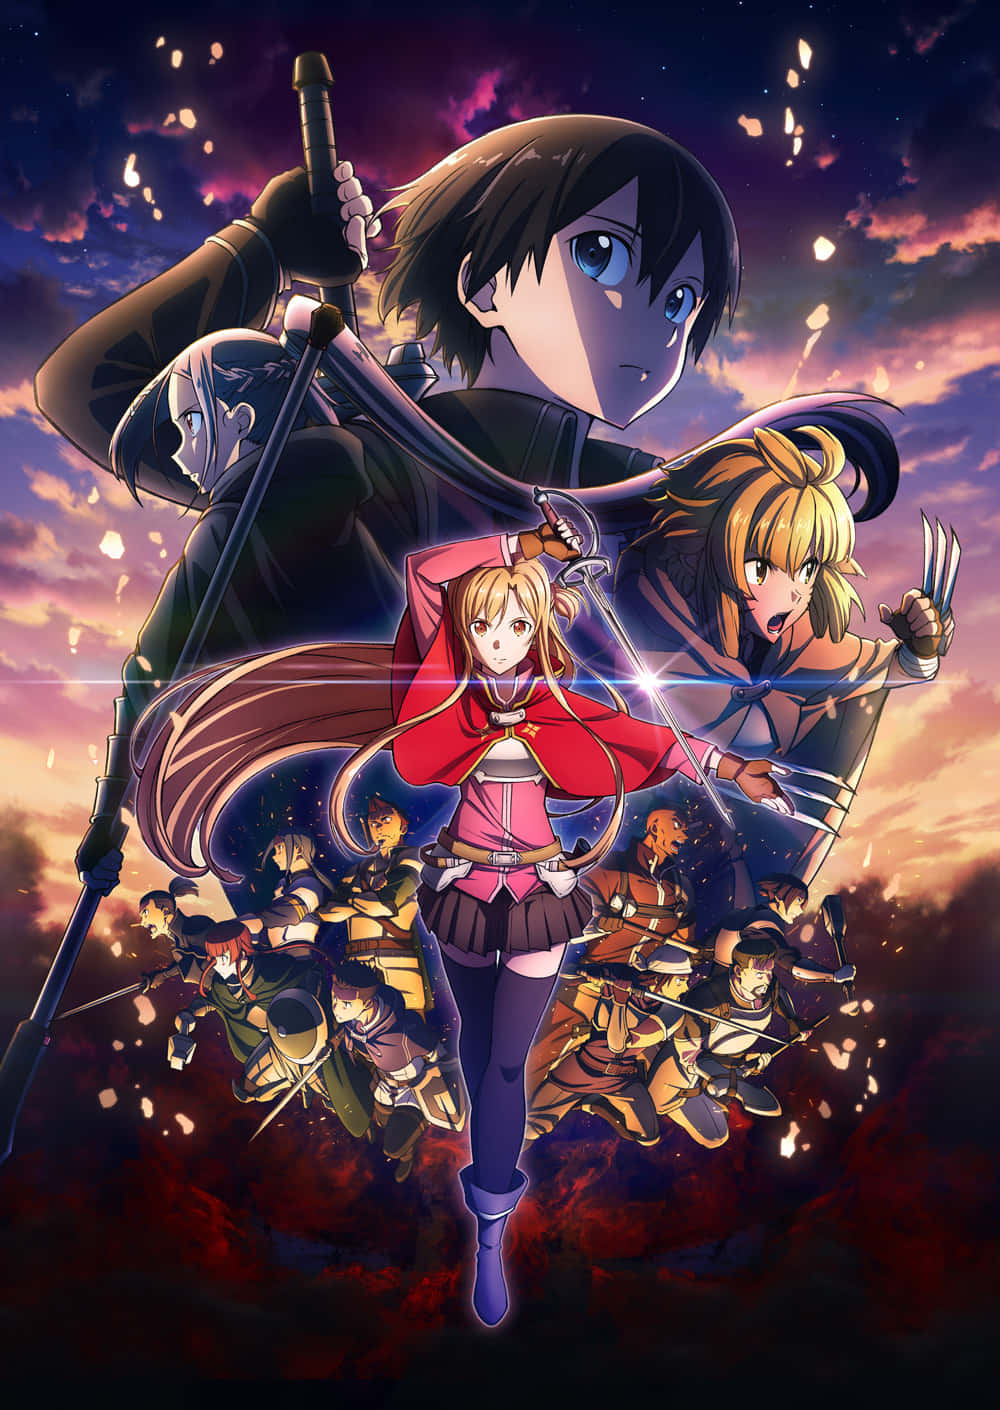 Kirito og Asuna, to af hovedkaraktererne fra anime-serien Sword Art Online, omgivet af digitale sommerfugle.